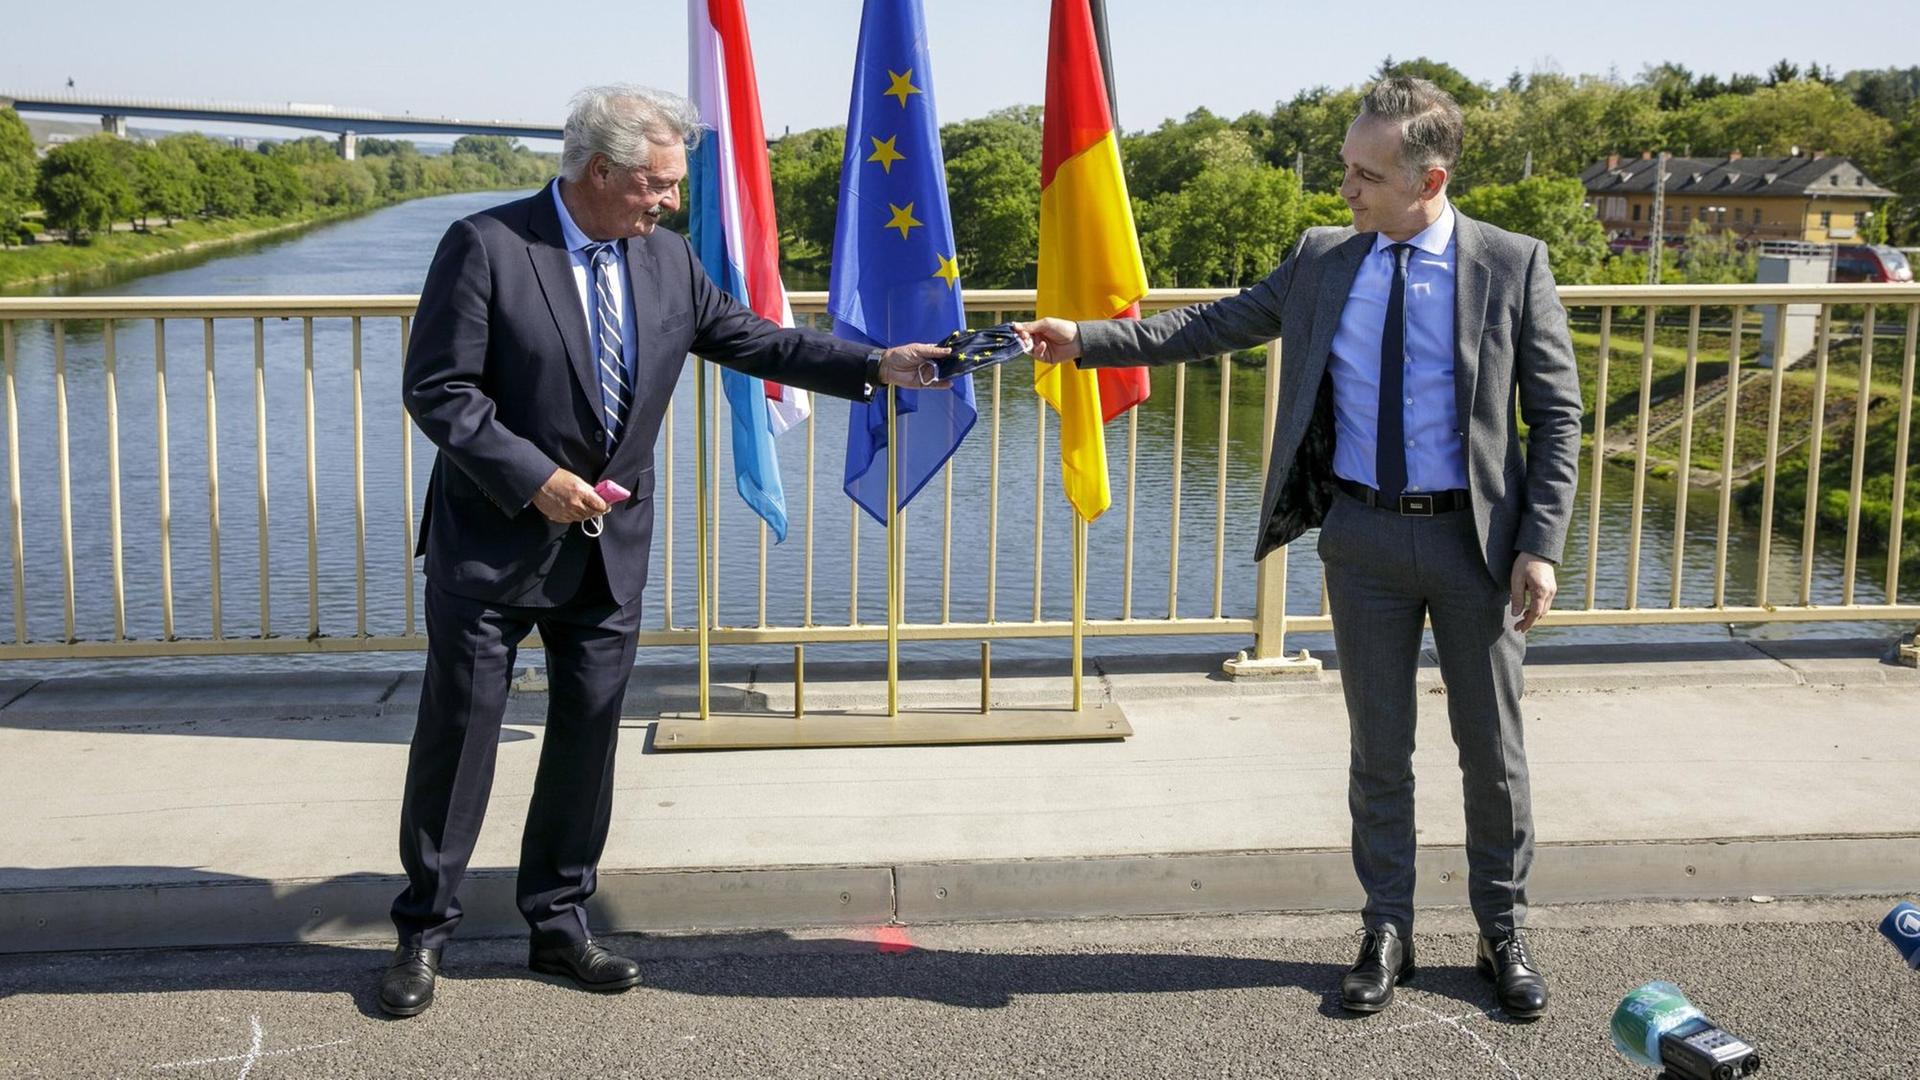 Heiko Maas und Jean Asselborn stehen auf einer Brücke der deutsch-luxemburgischen Grenze und halten als symbolische Geste eine Corona-Gesichtsmaske mit dem Wappen der Europäischen Union.